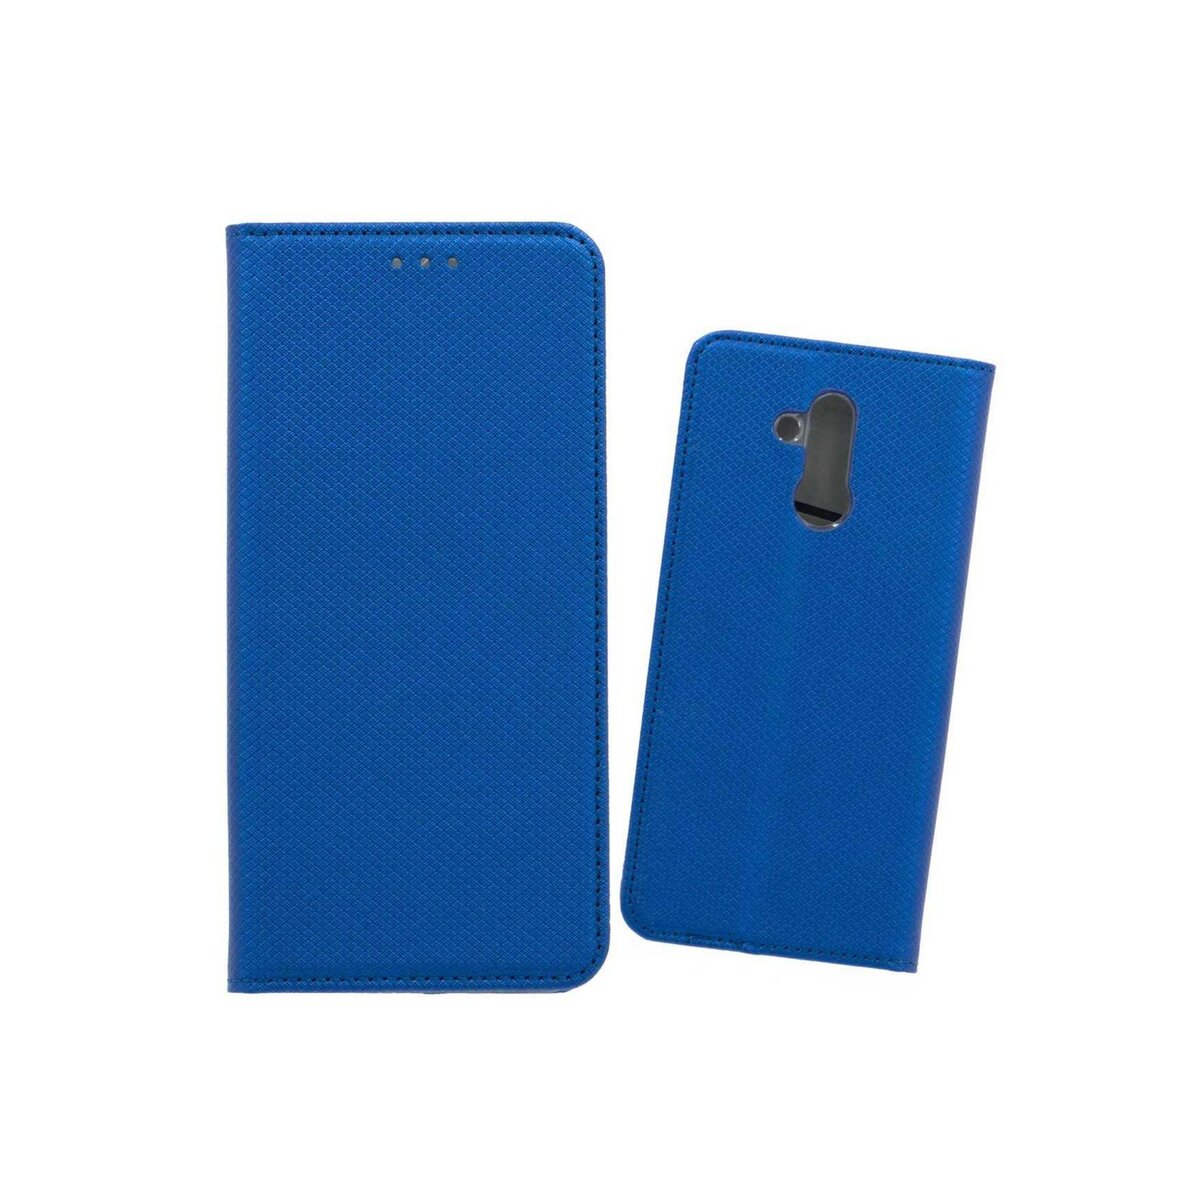 amahousse Housse bleue Huawei Mate 20 Lite étui folio texturé aimanté